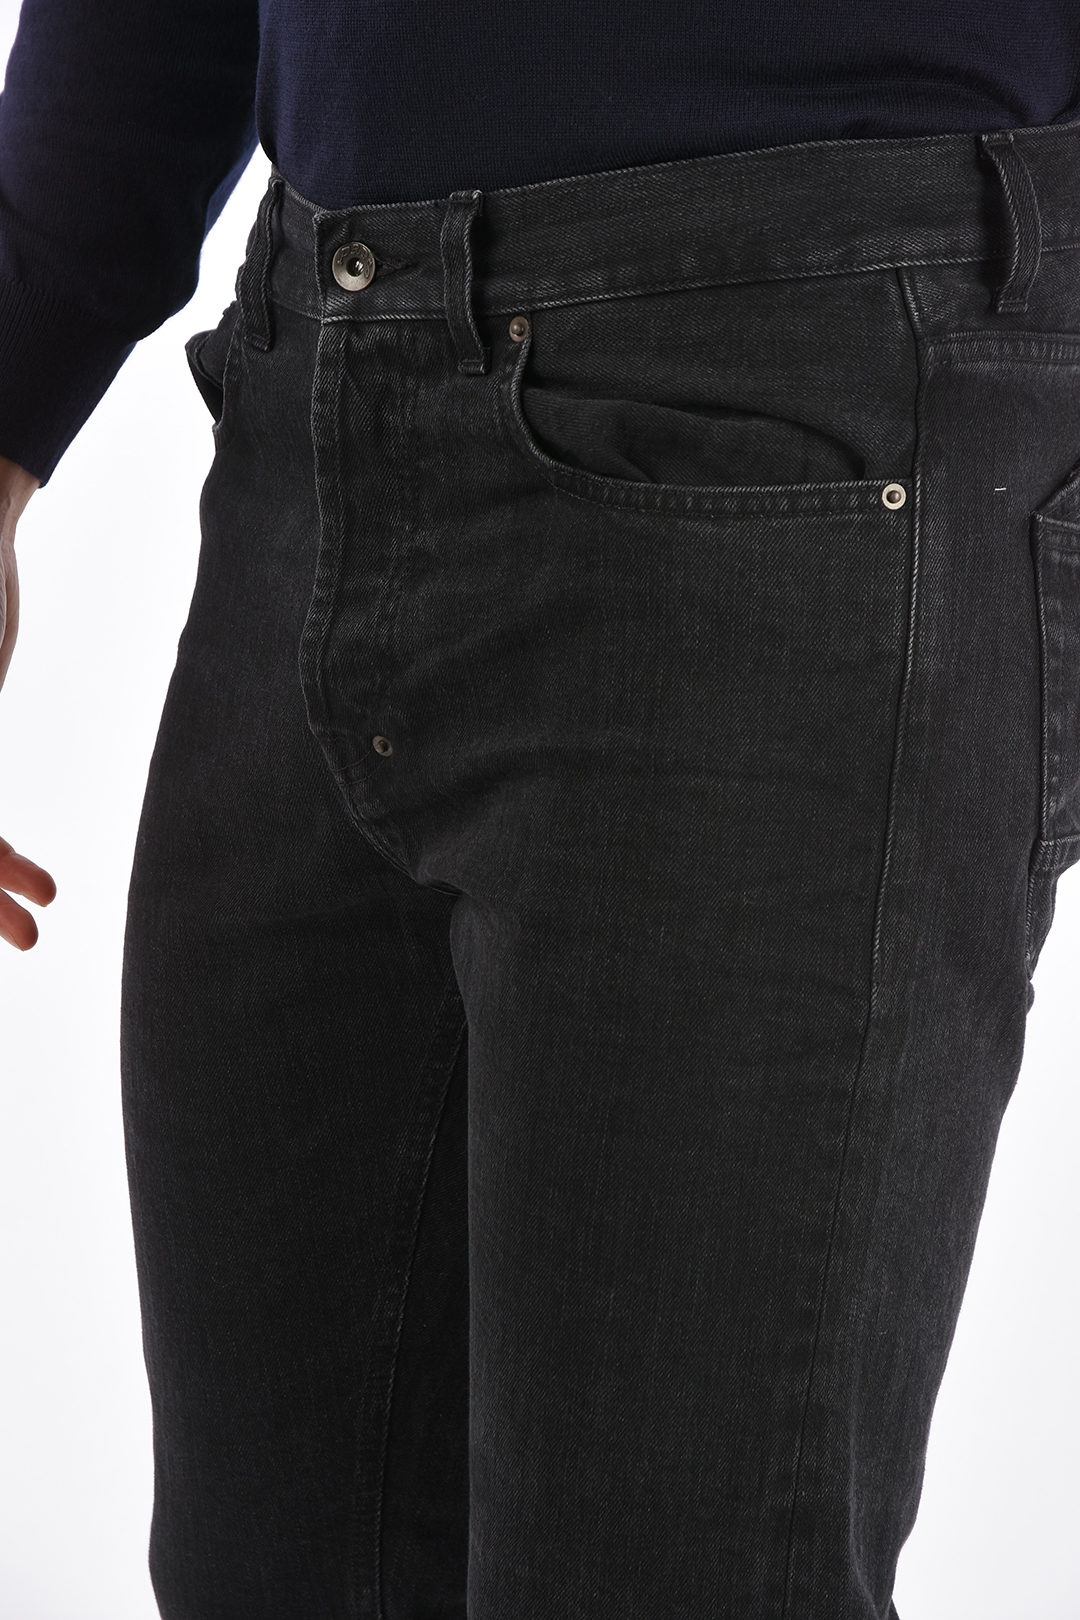 PRPS 18cm Mid-rise waist ESPRIT jeans men - Glamood Outlet